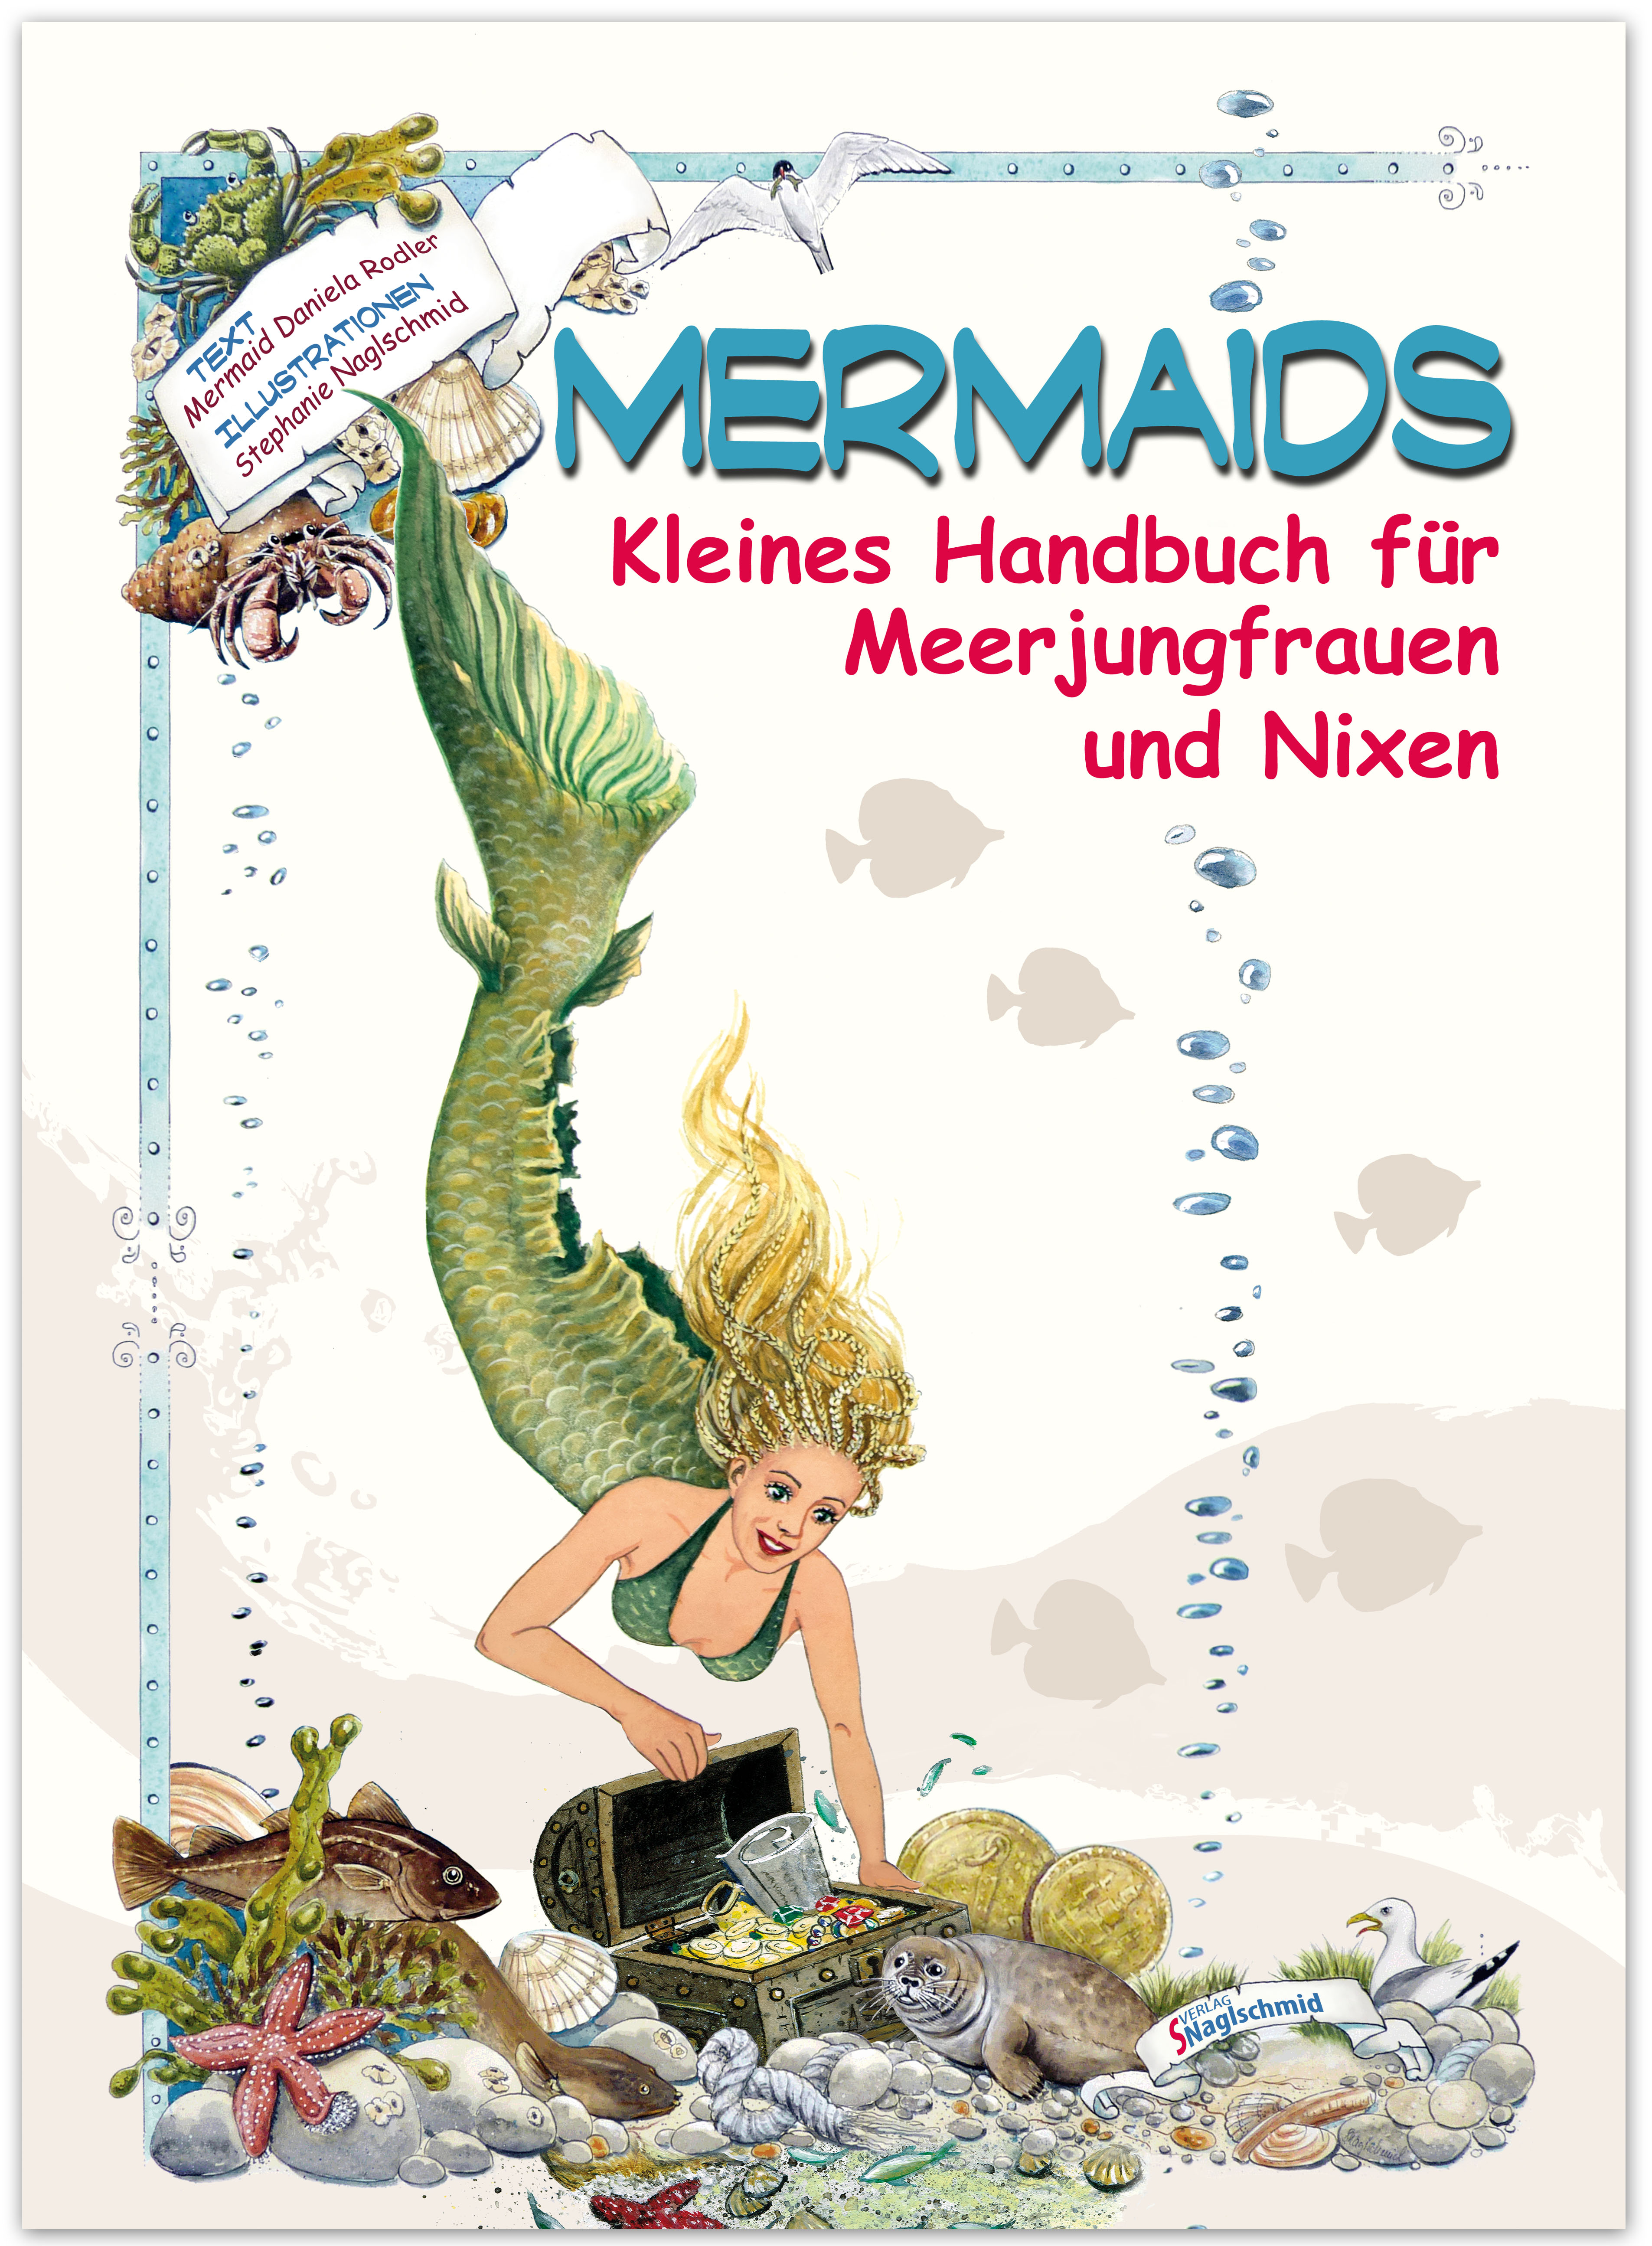 Mermaids - Kleines Handbuch für Meerjungfrauen und Nixen